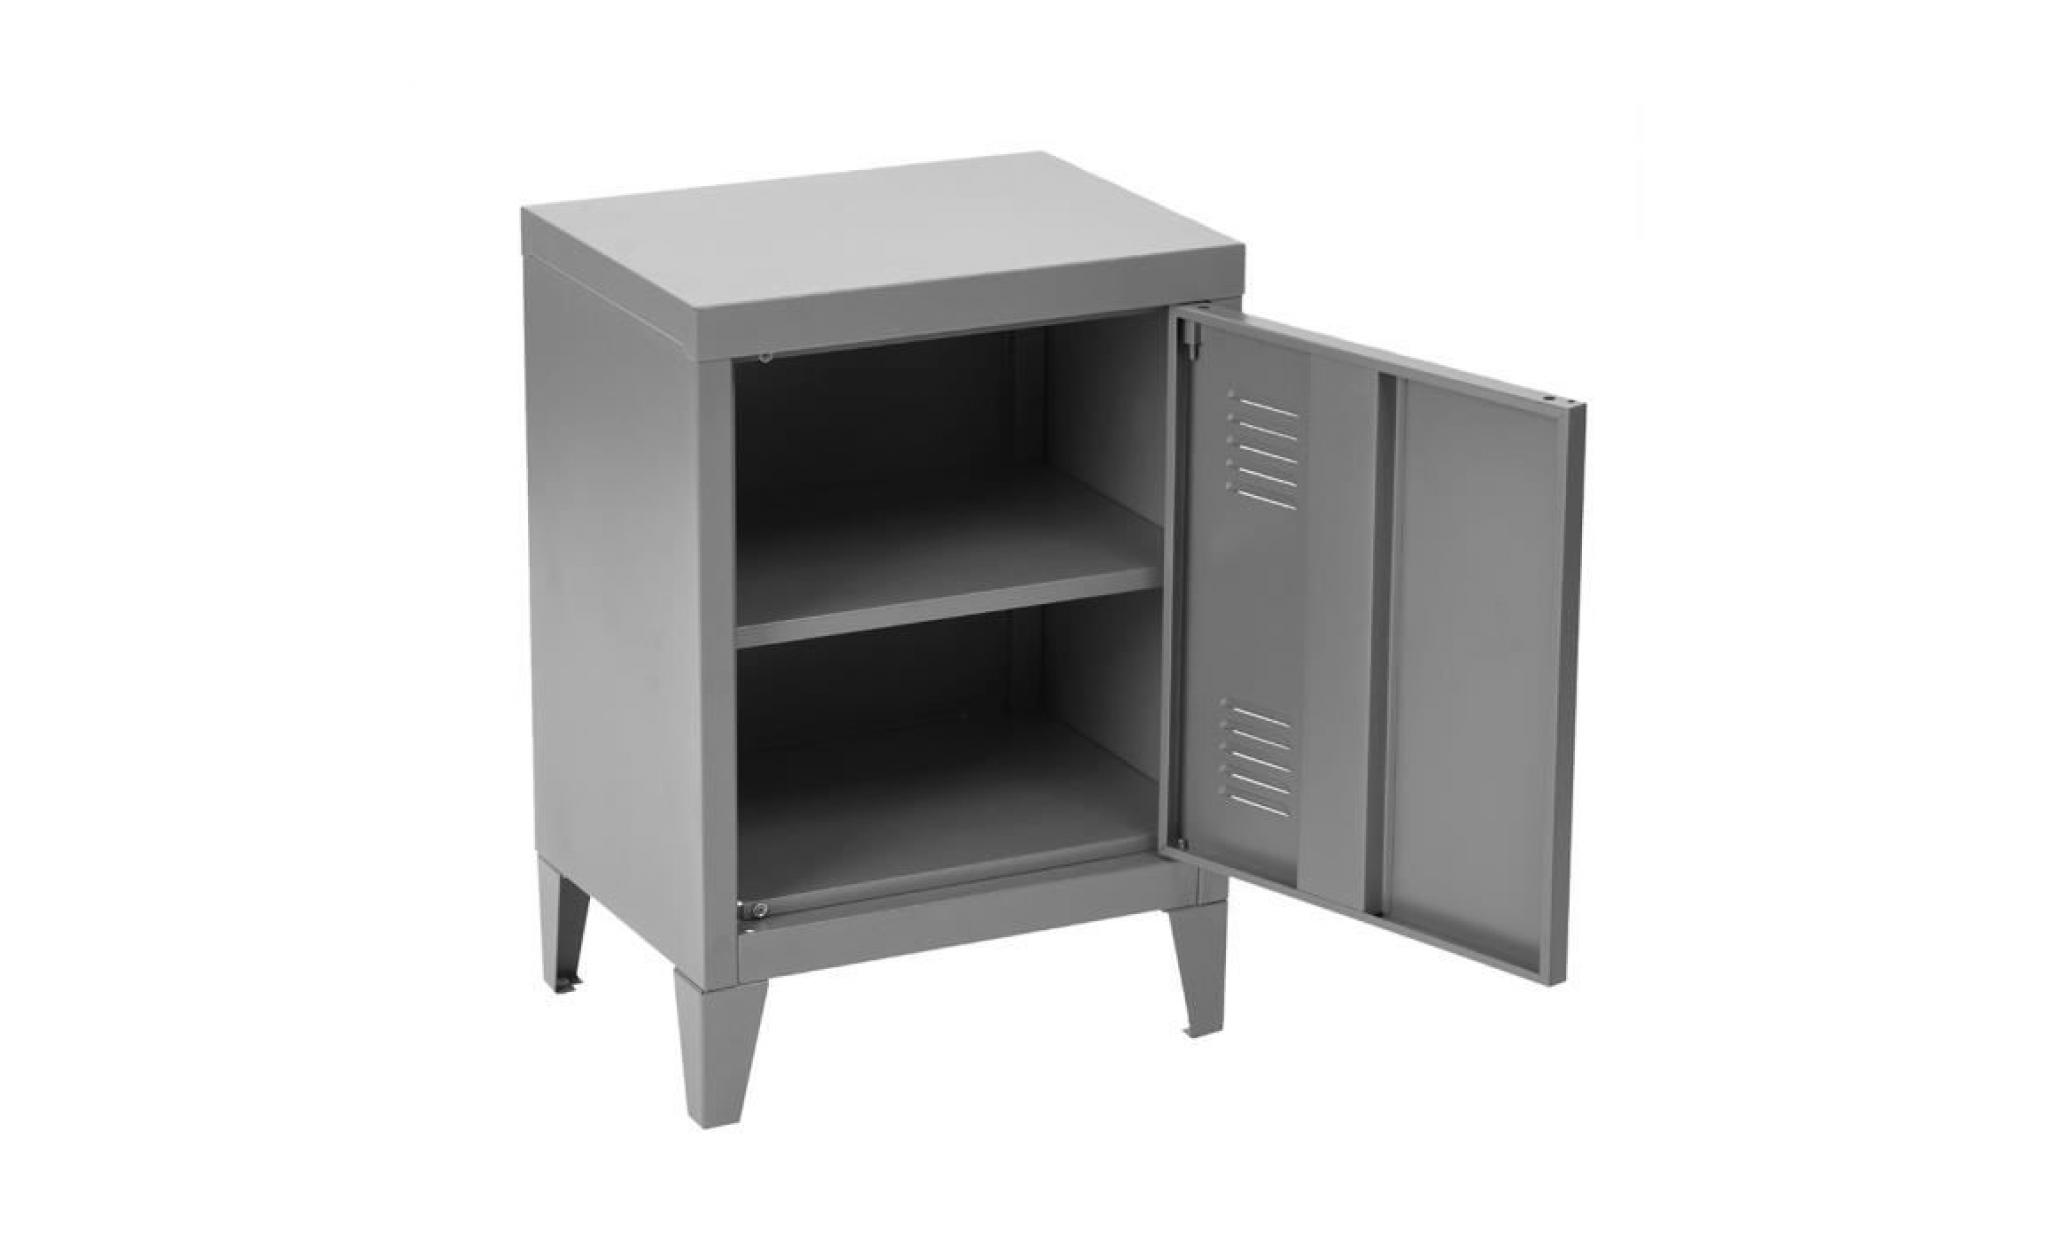 furniturer table de chevet   industriel en métal   laqué gris   1 porte 2 niveaux   40.5x30.5x57.5cm pas cher